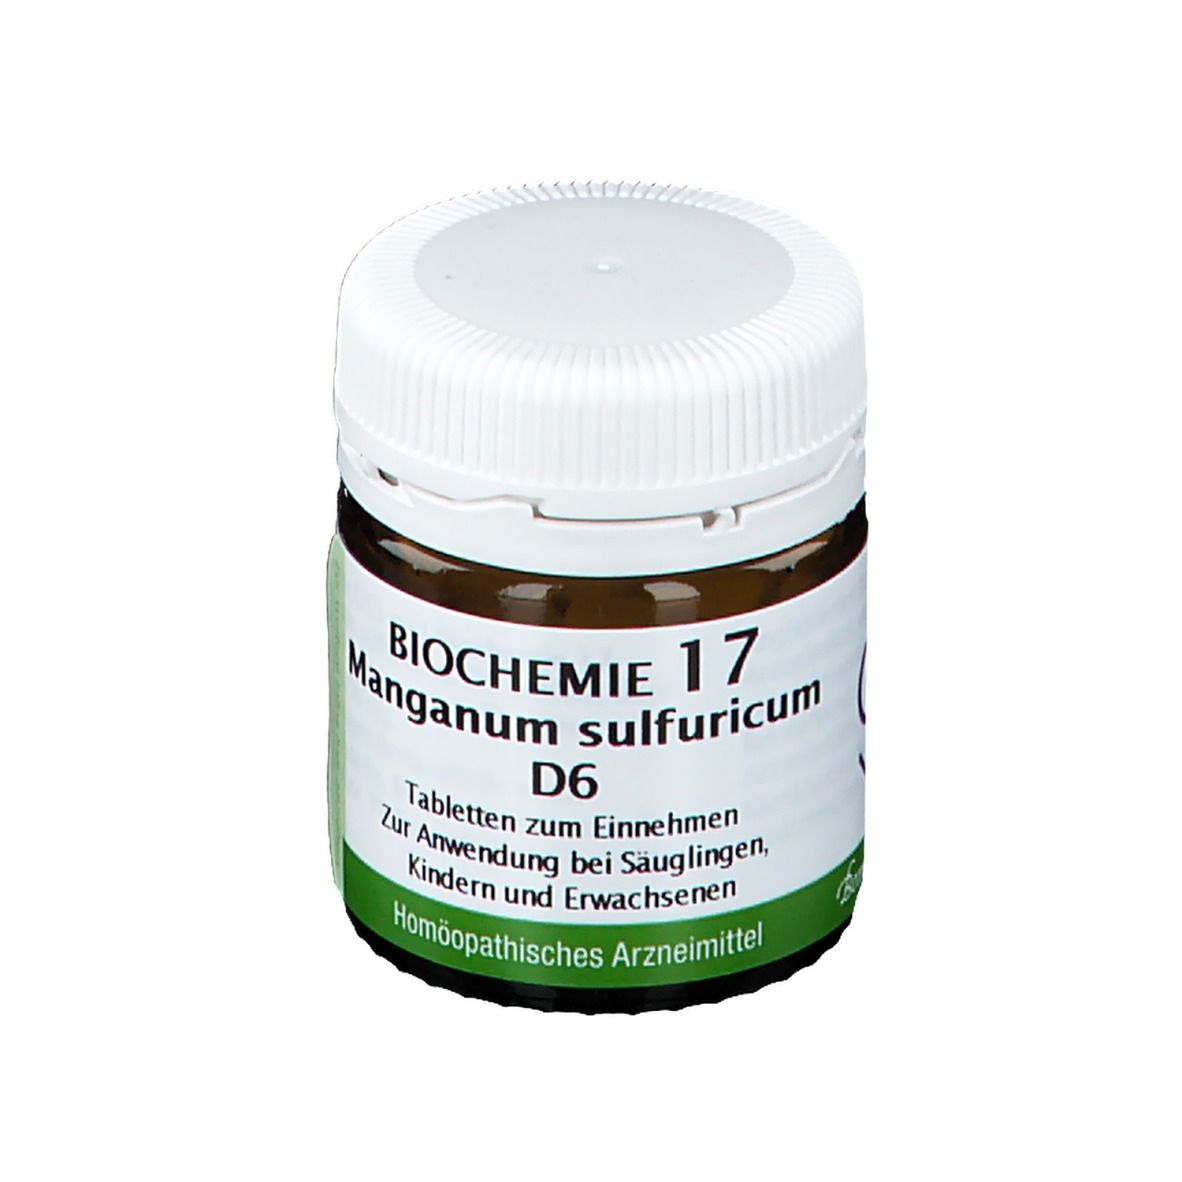 Biochemie 17 Manganum Sulfuricum D6